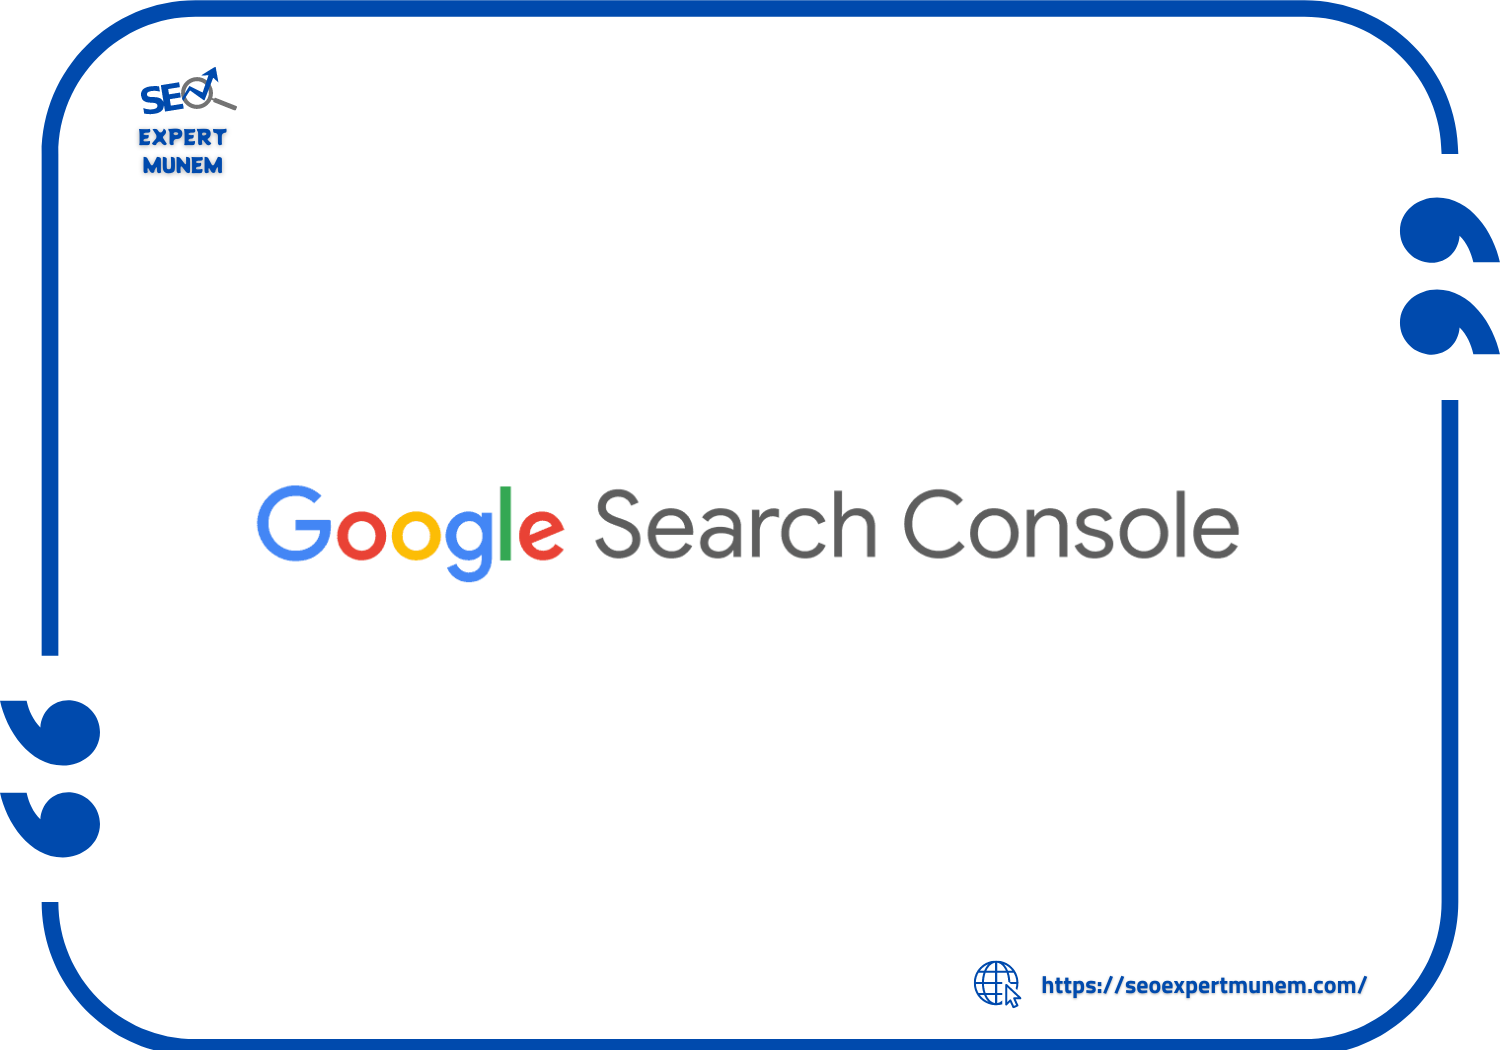 Purpose of Google Search Console